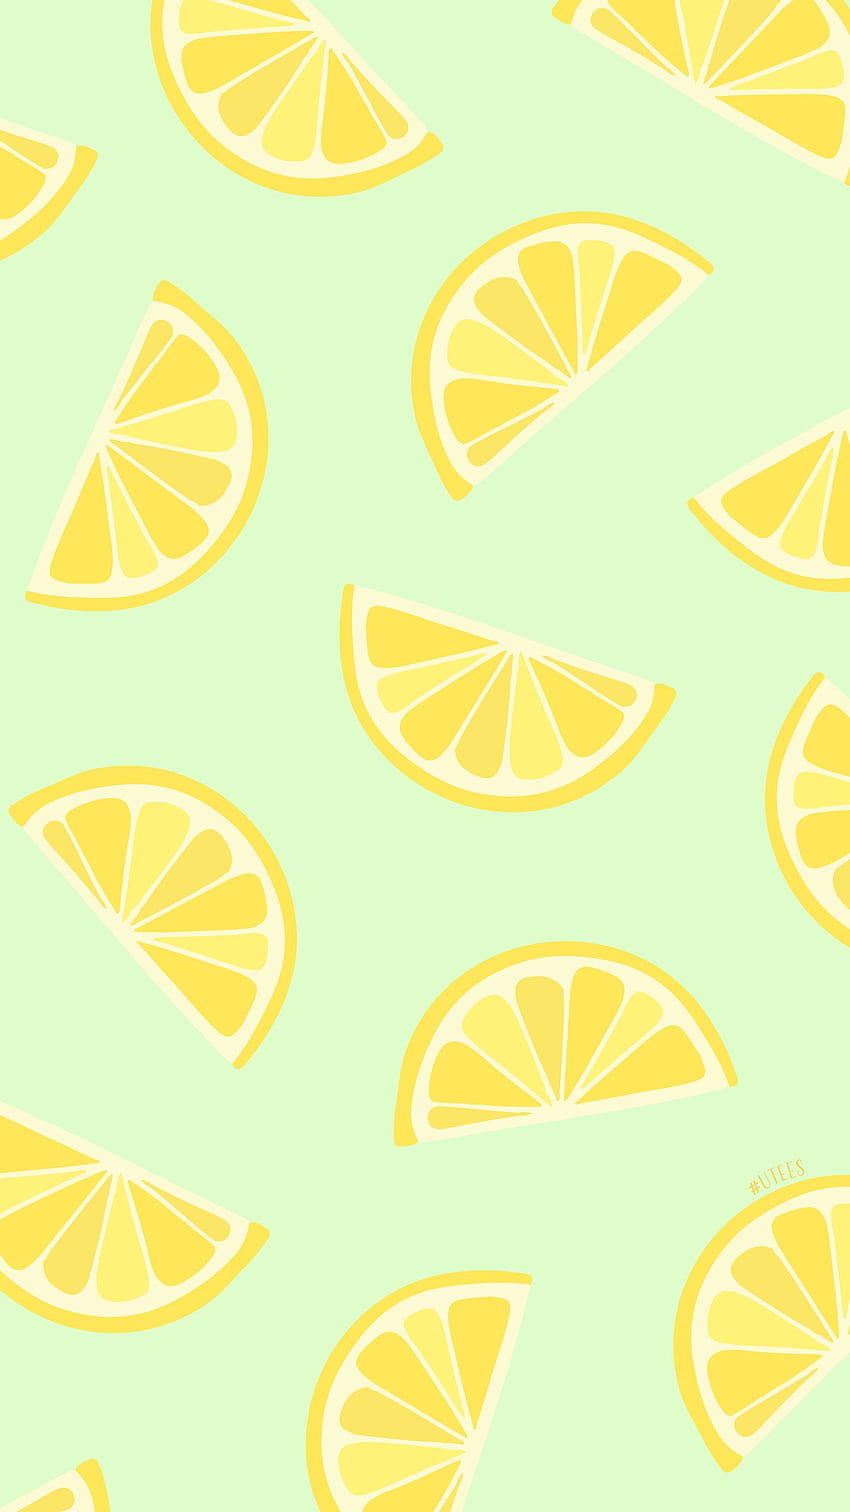 Lemon Pattern Wallpaper Background Aesthetic Stock Illustration   Illustration of pattern number 215032721